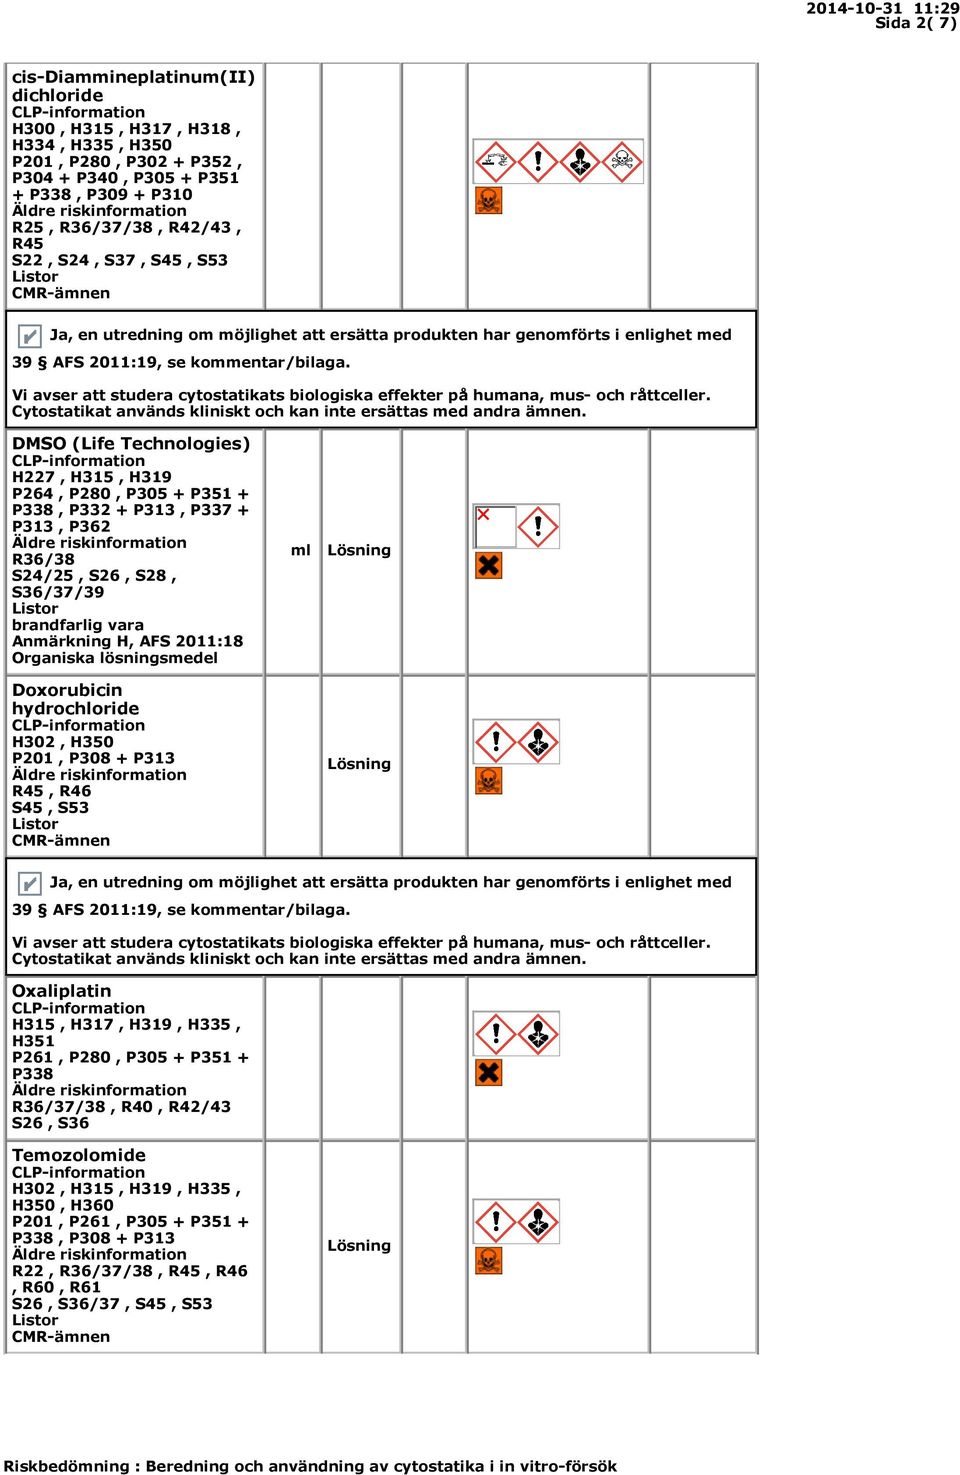 AFS 2011:18 Organiska lösningsmedel Doxorubicin hydrochloride H302, H350 P201, P308 + P313 R45, R46 S45, S53 ml Lösning Lösning Oxaliplatin H315, H317, H319, H335, H351 P261, P280, P305 + P351